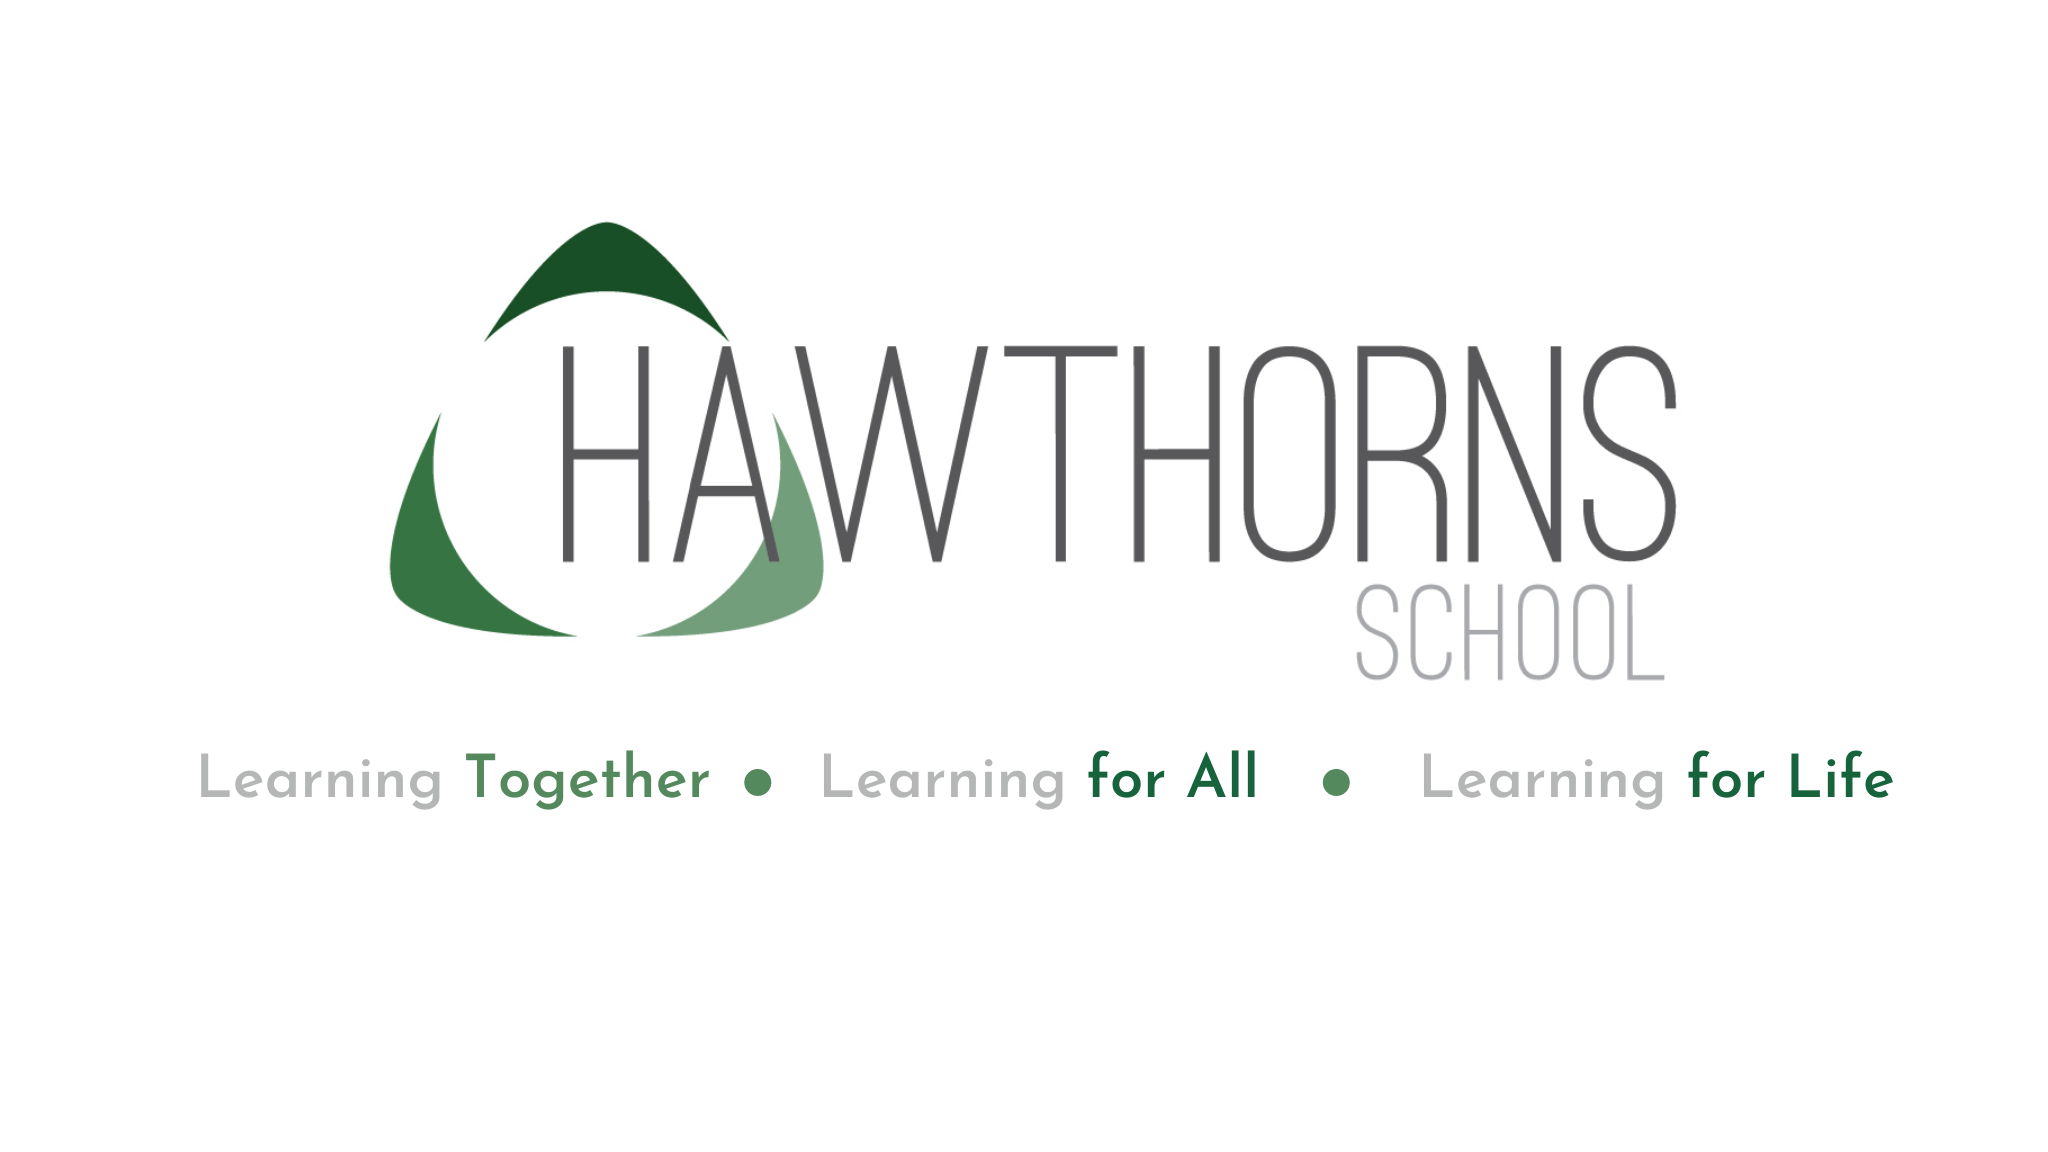 hawthorns school logo and ethos